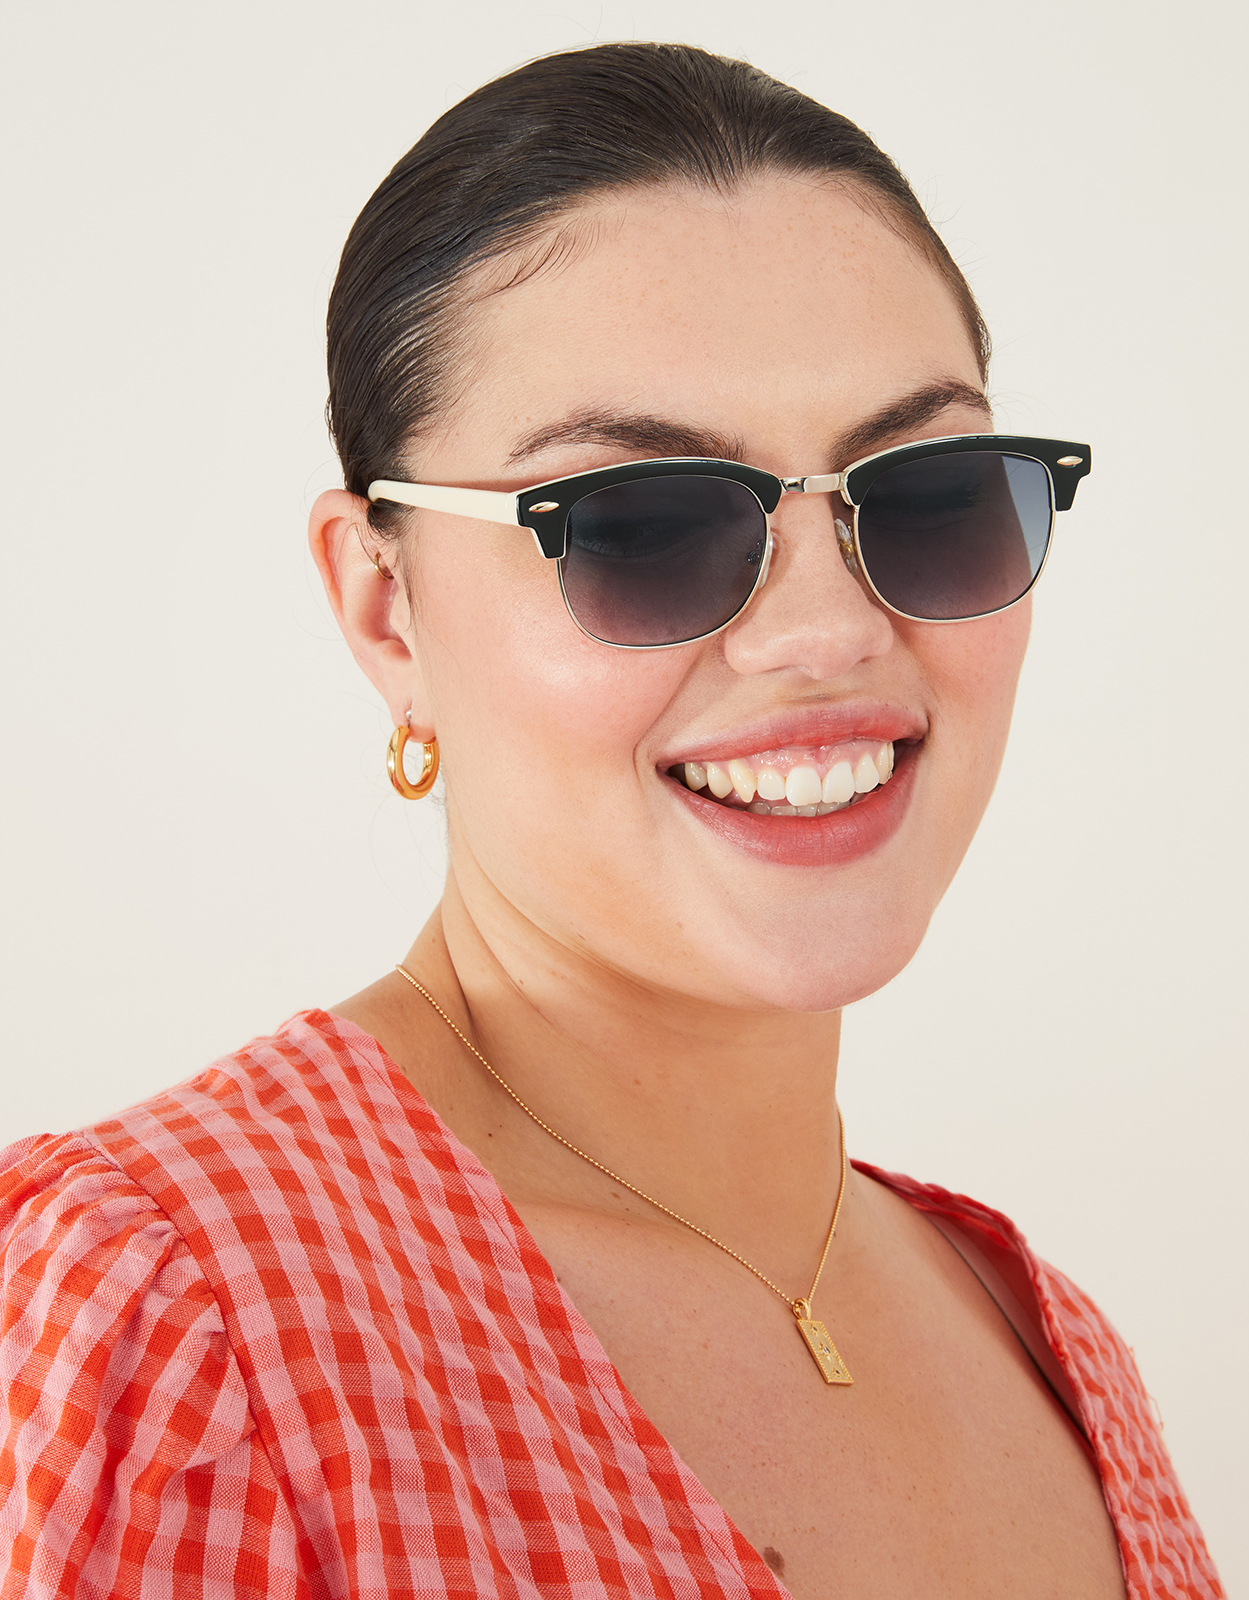 Accessorize Women's Purple and Black Classic Tortoiseshell Monochrome Square Sunglasses, Size: One Size